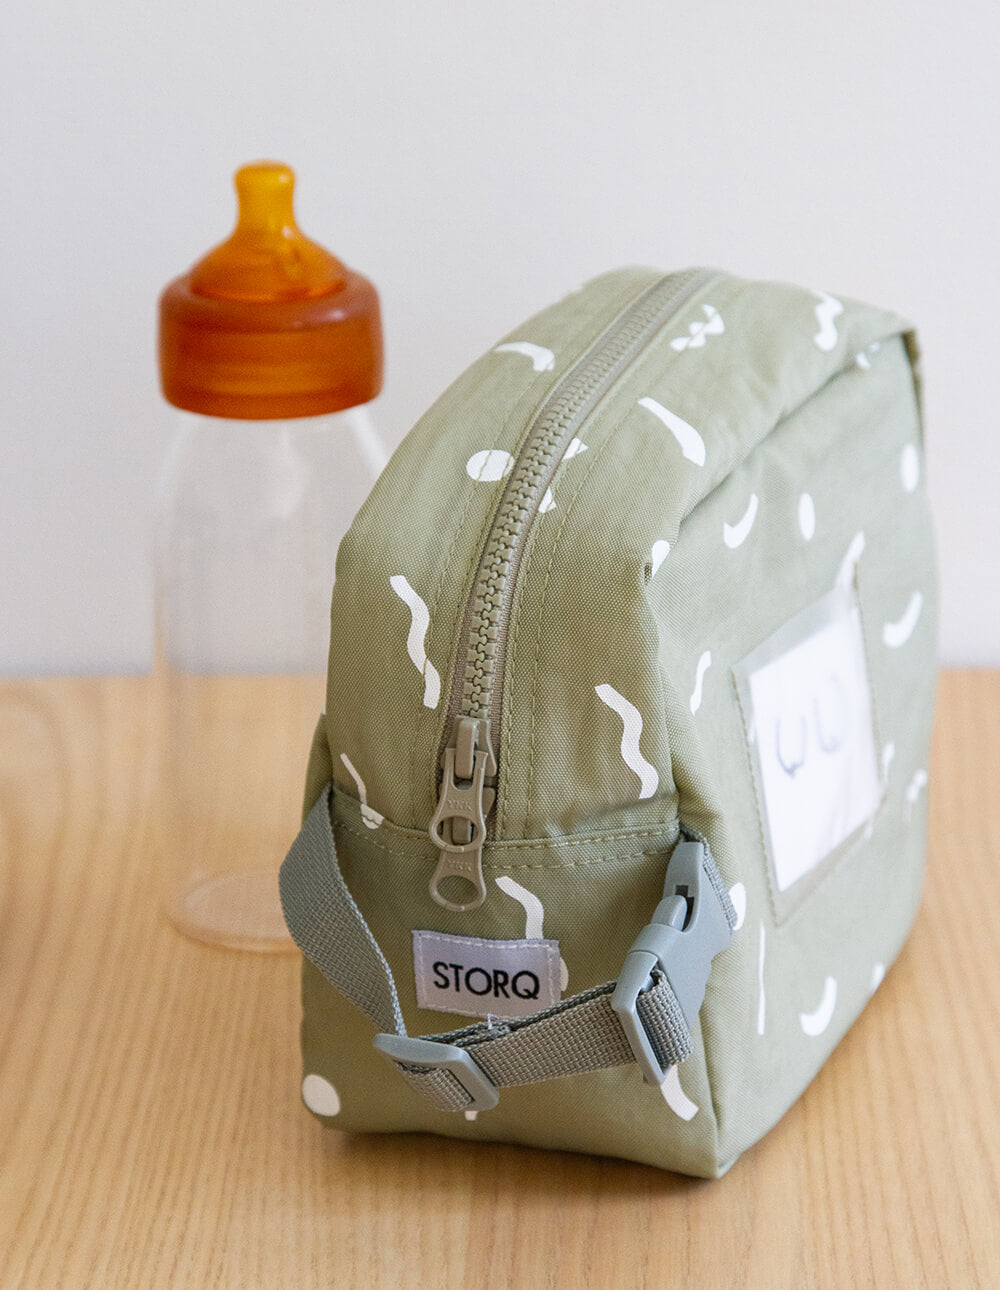 Storq Super Chill Cooler Bag | Sage